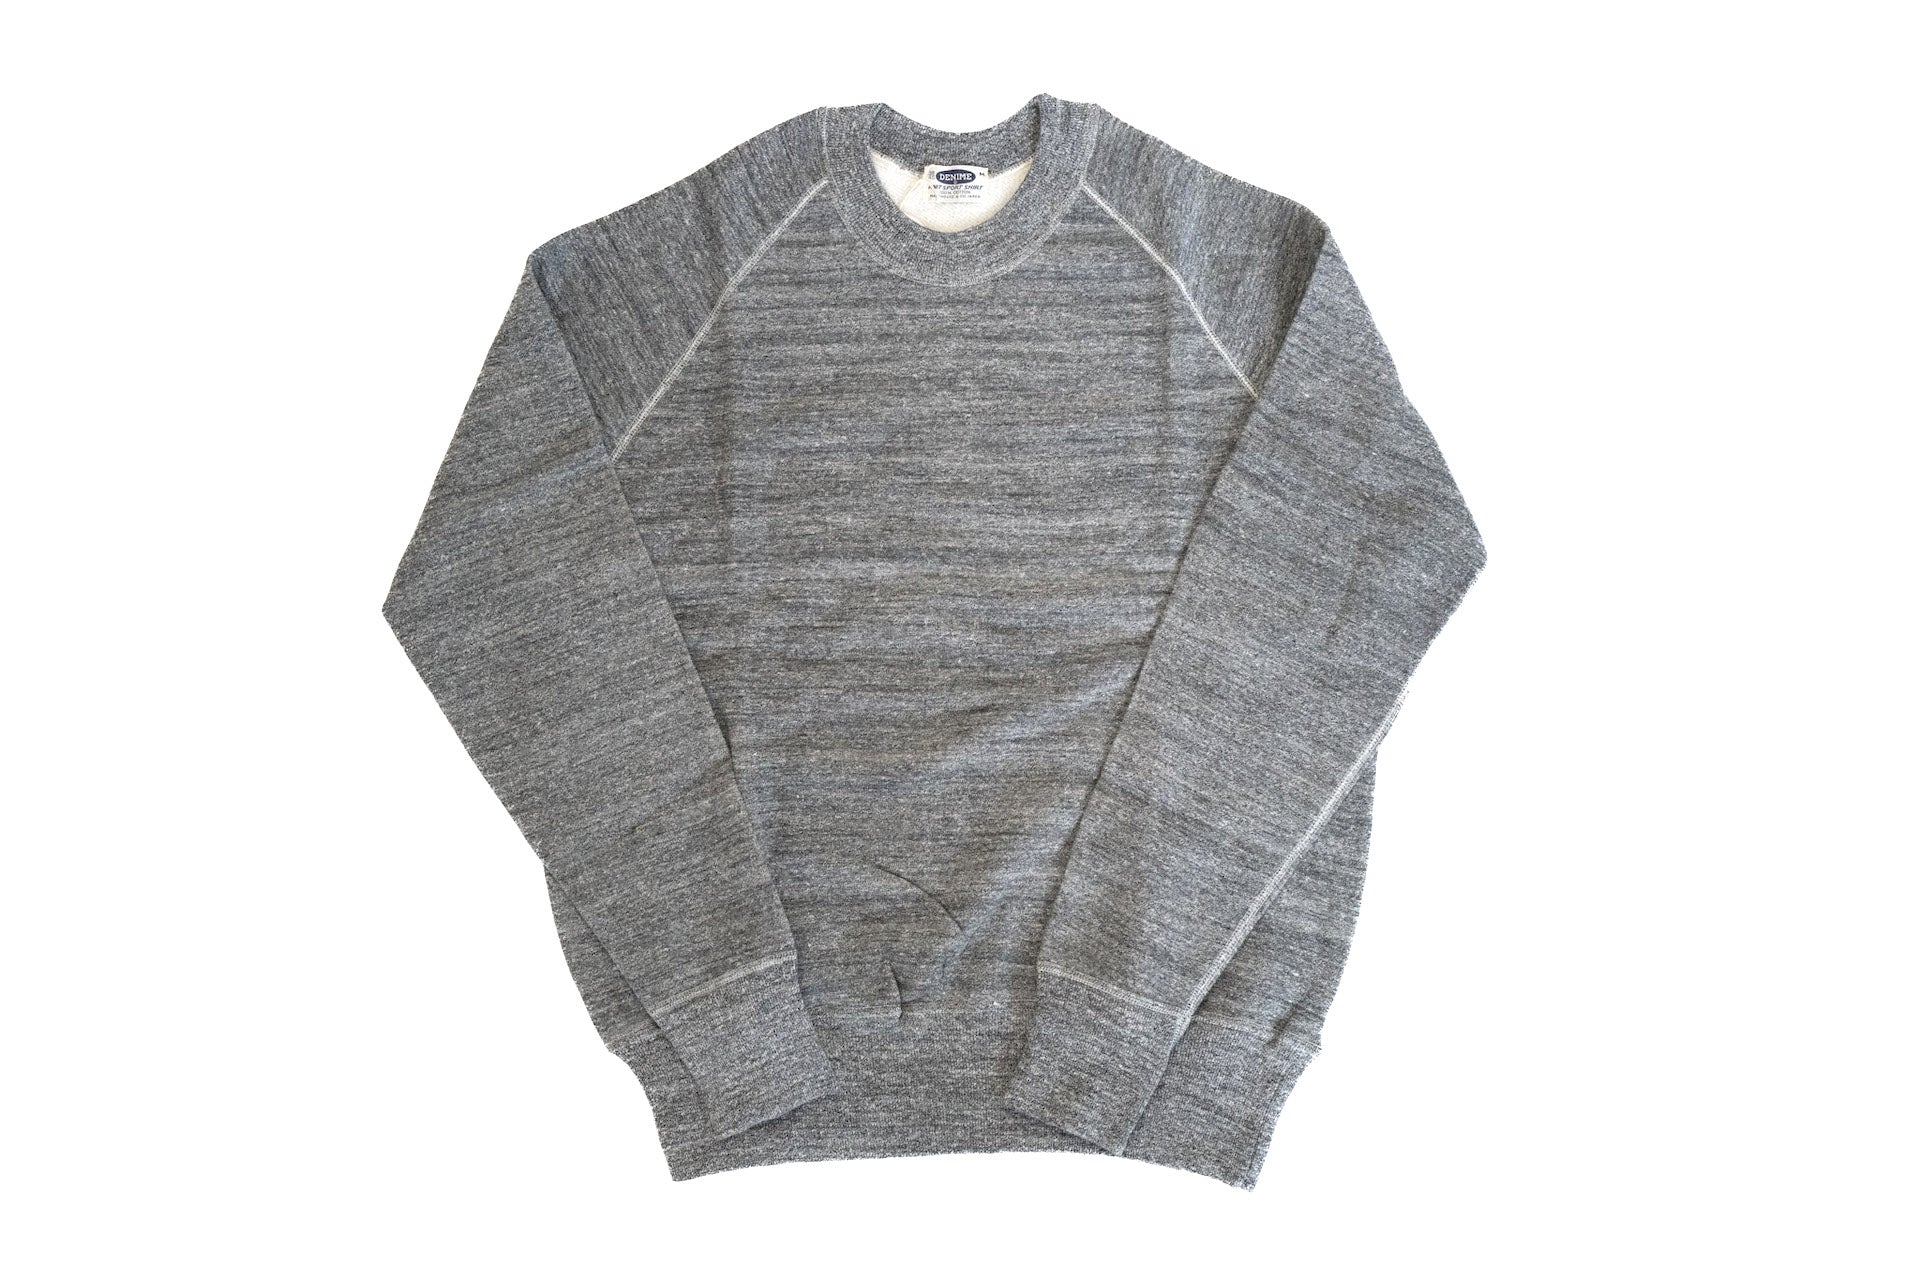 Denime X Warehouse Co Lot.261 10oz "Raglan" Loopwheeled Sweatshirt (Grey)